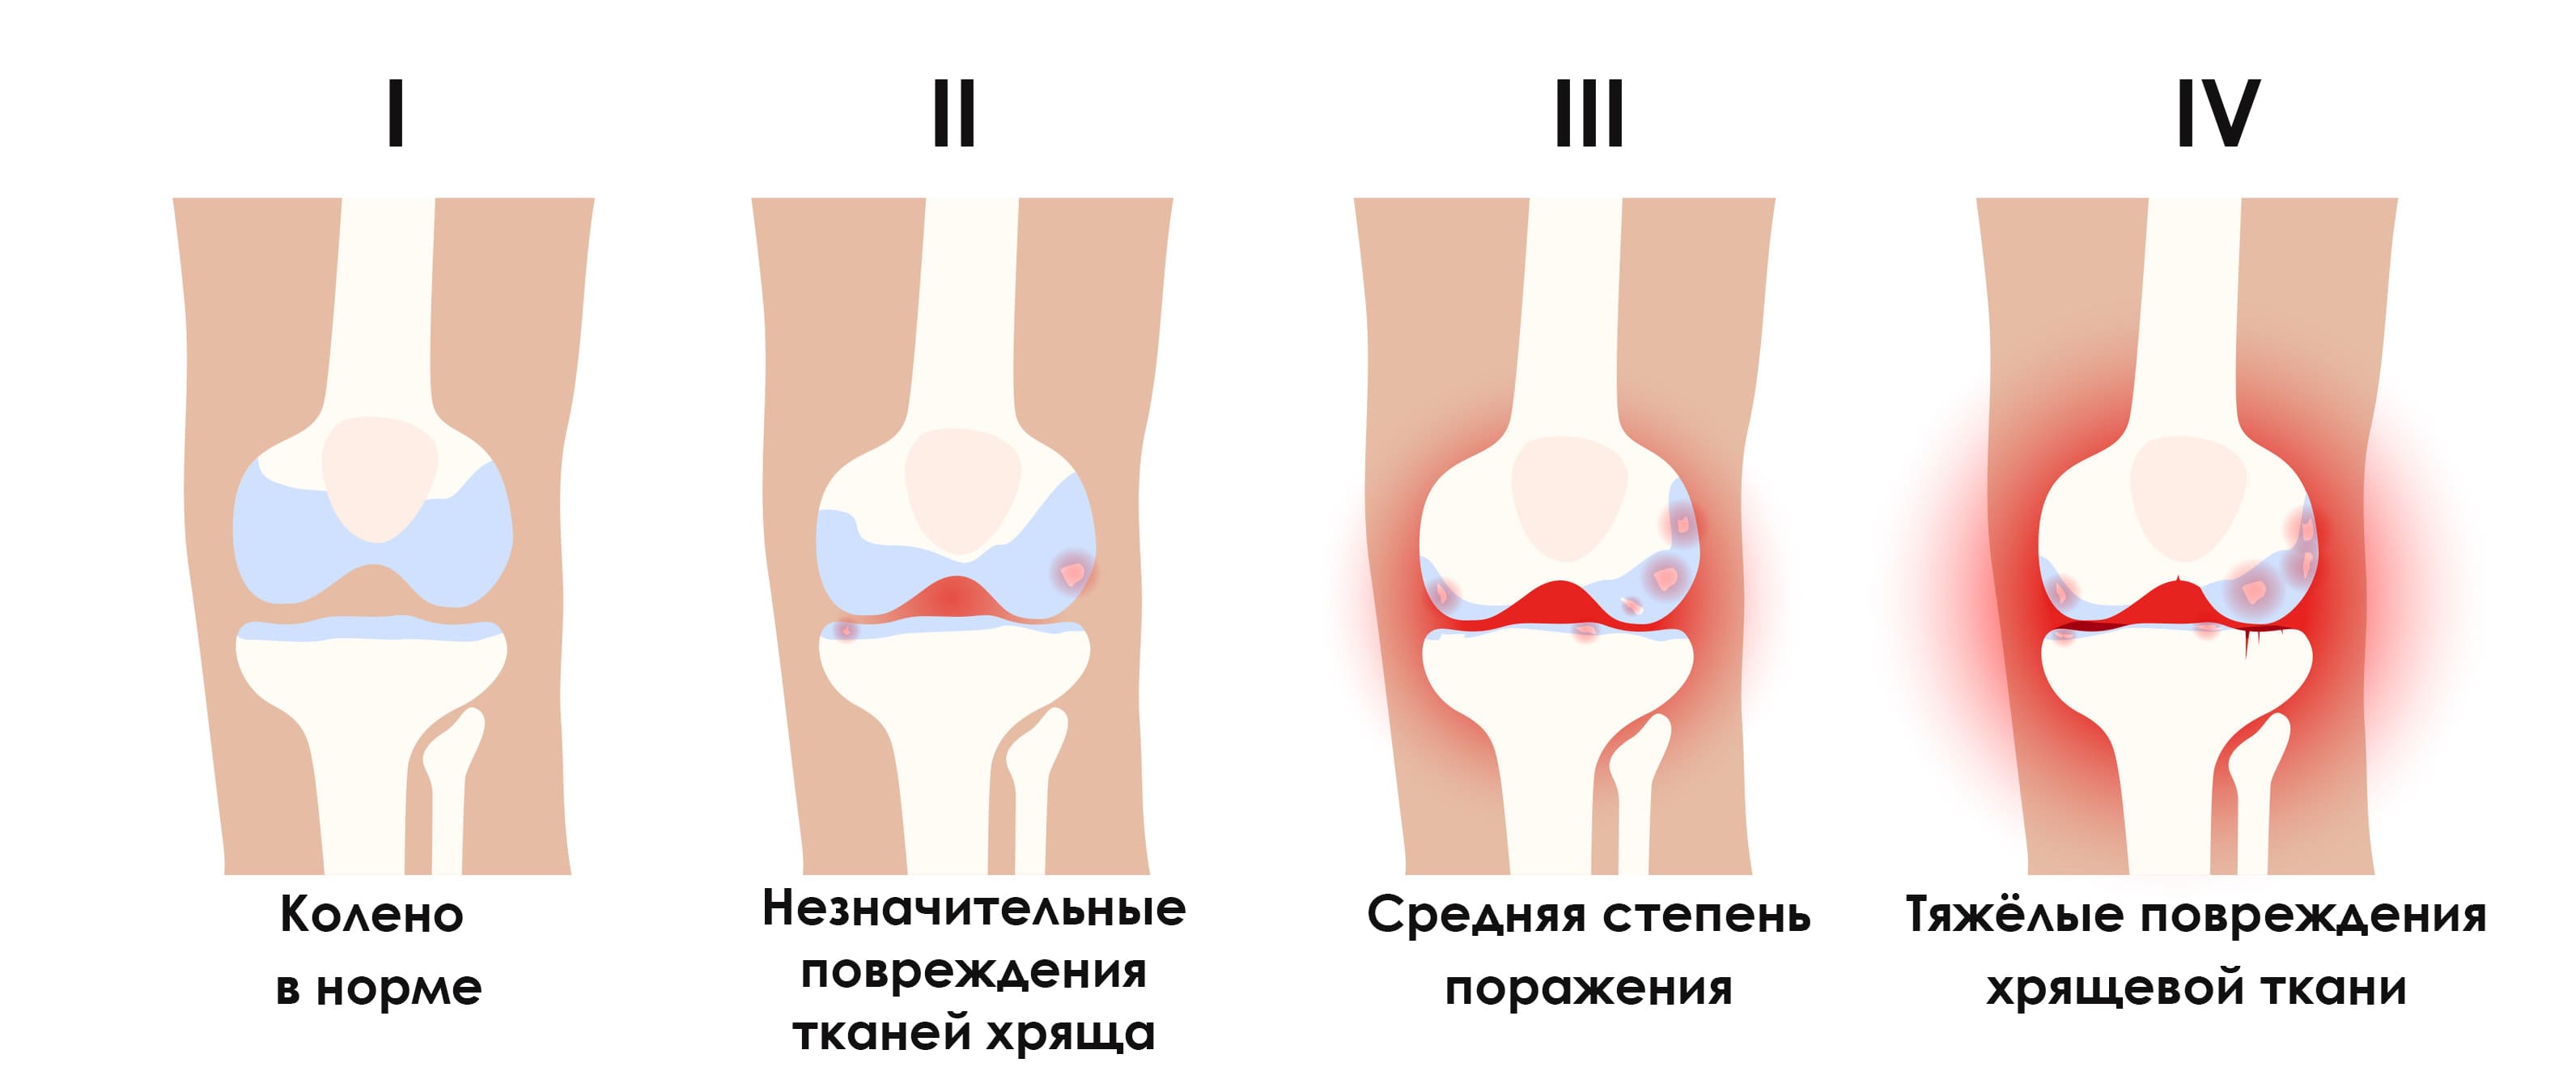 Артроз коленного сустава 3 степени